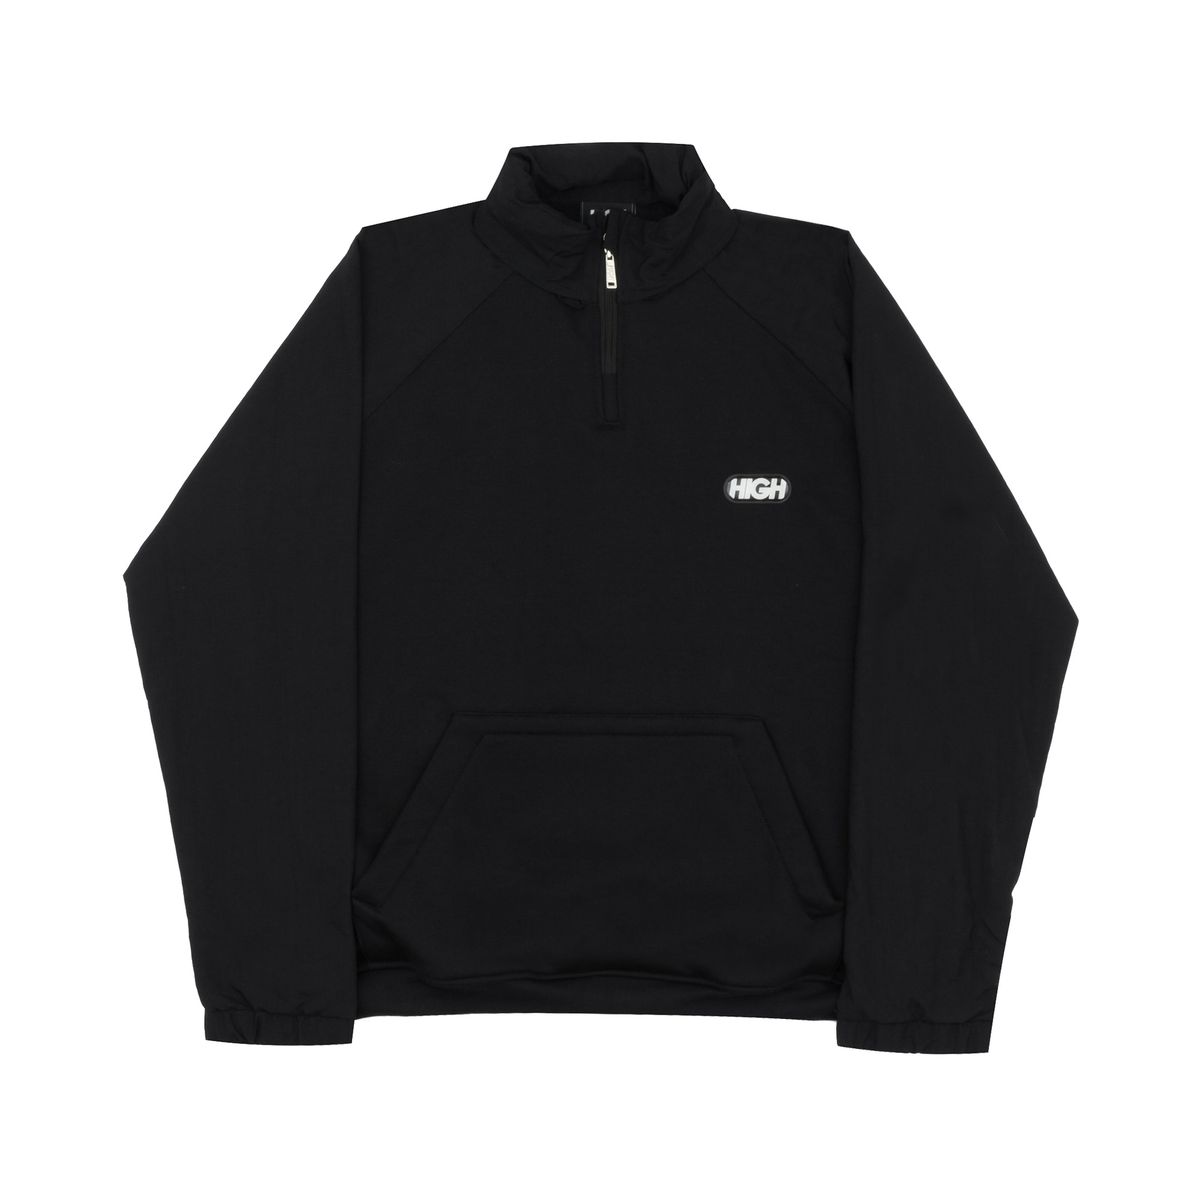 Tranck hoodie high Black